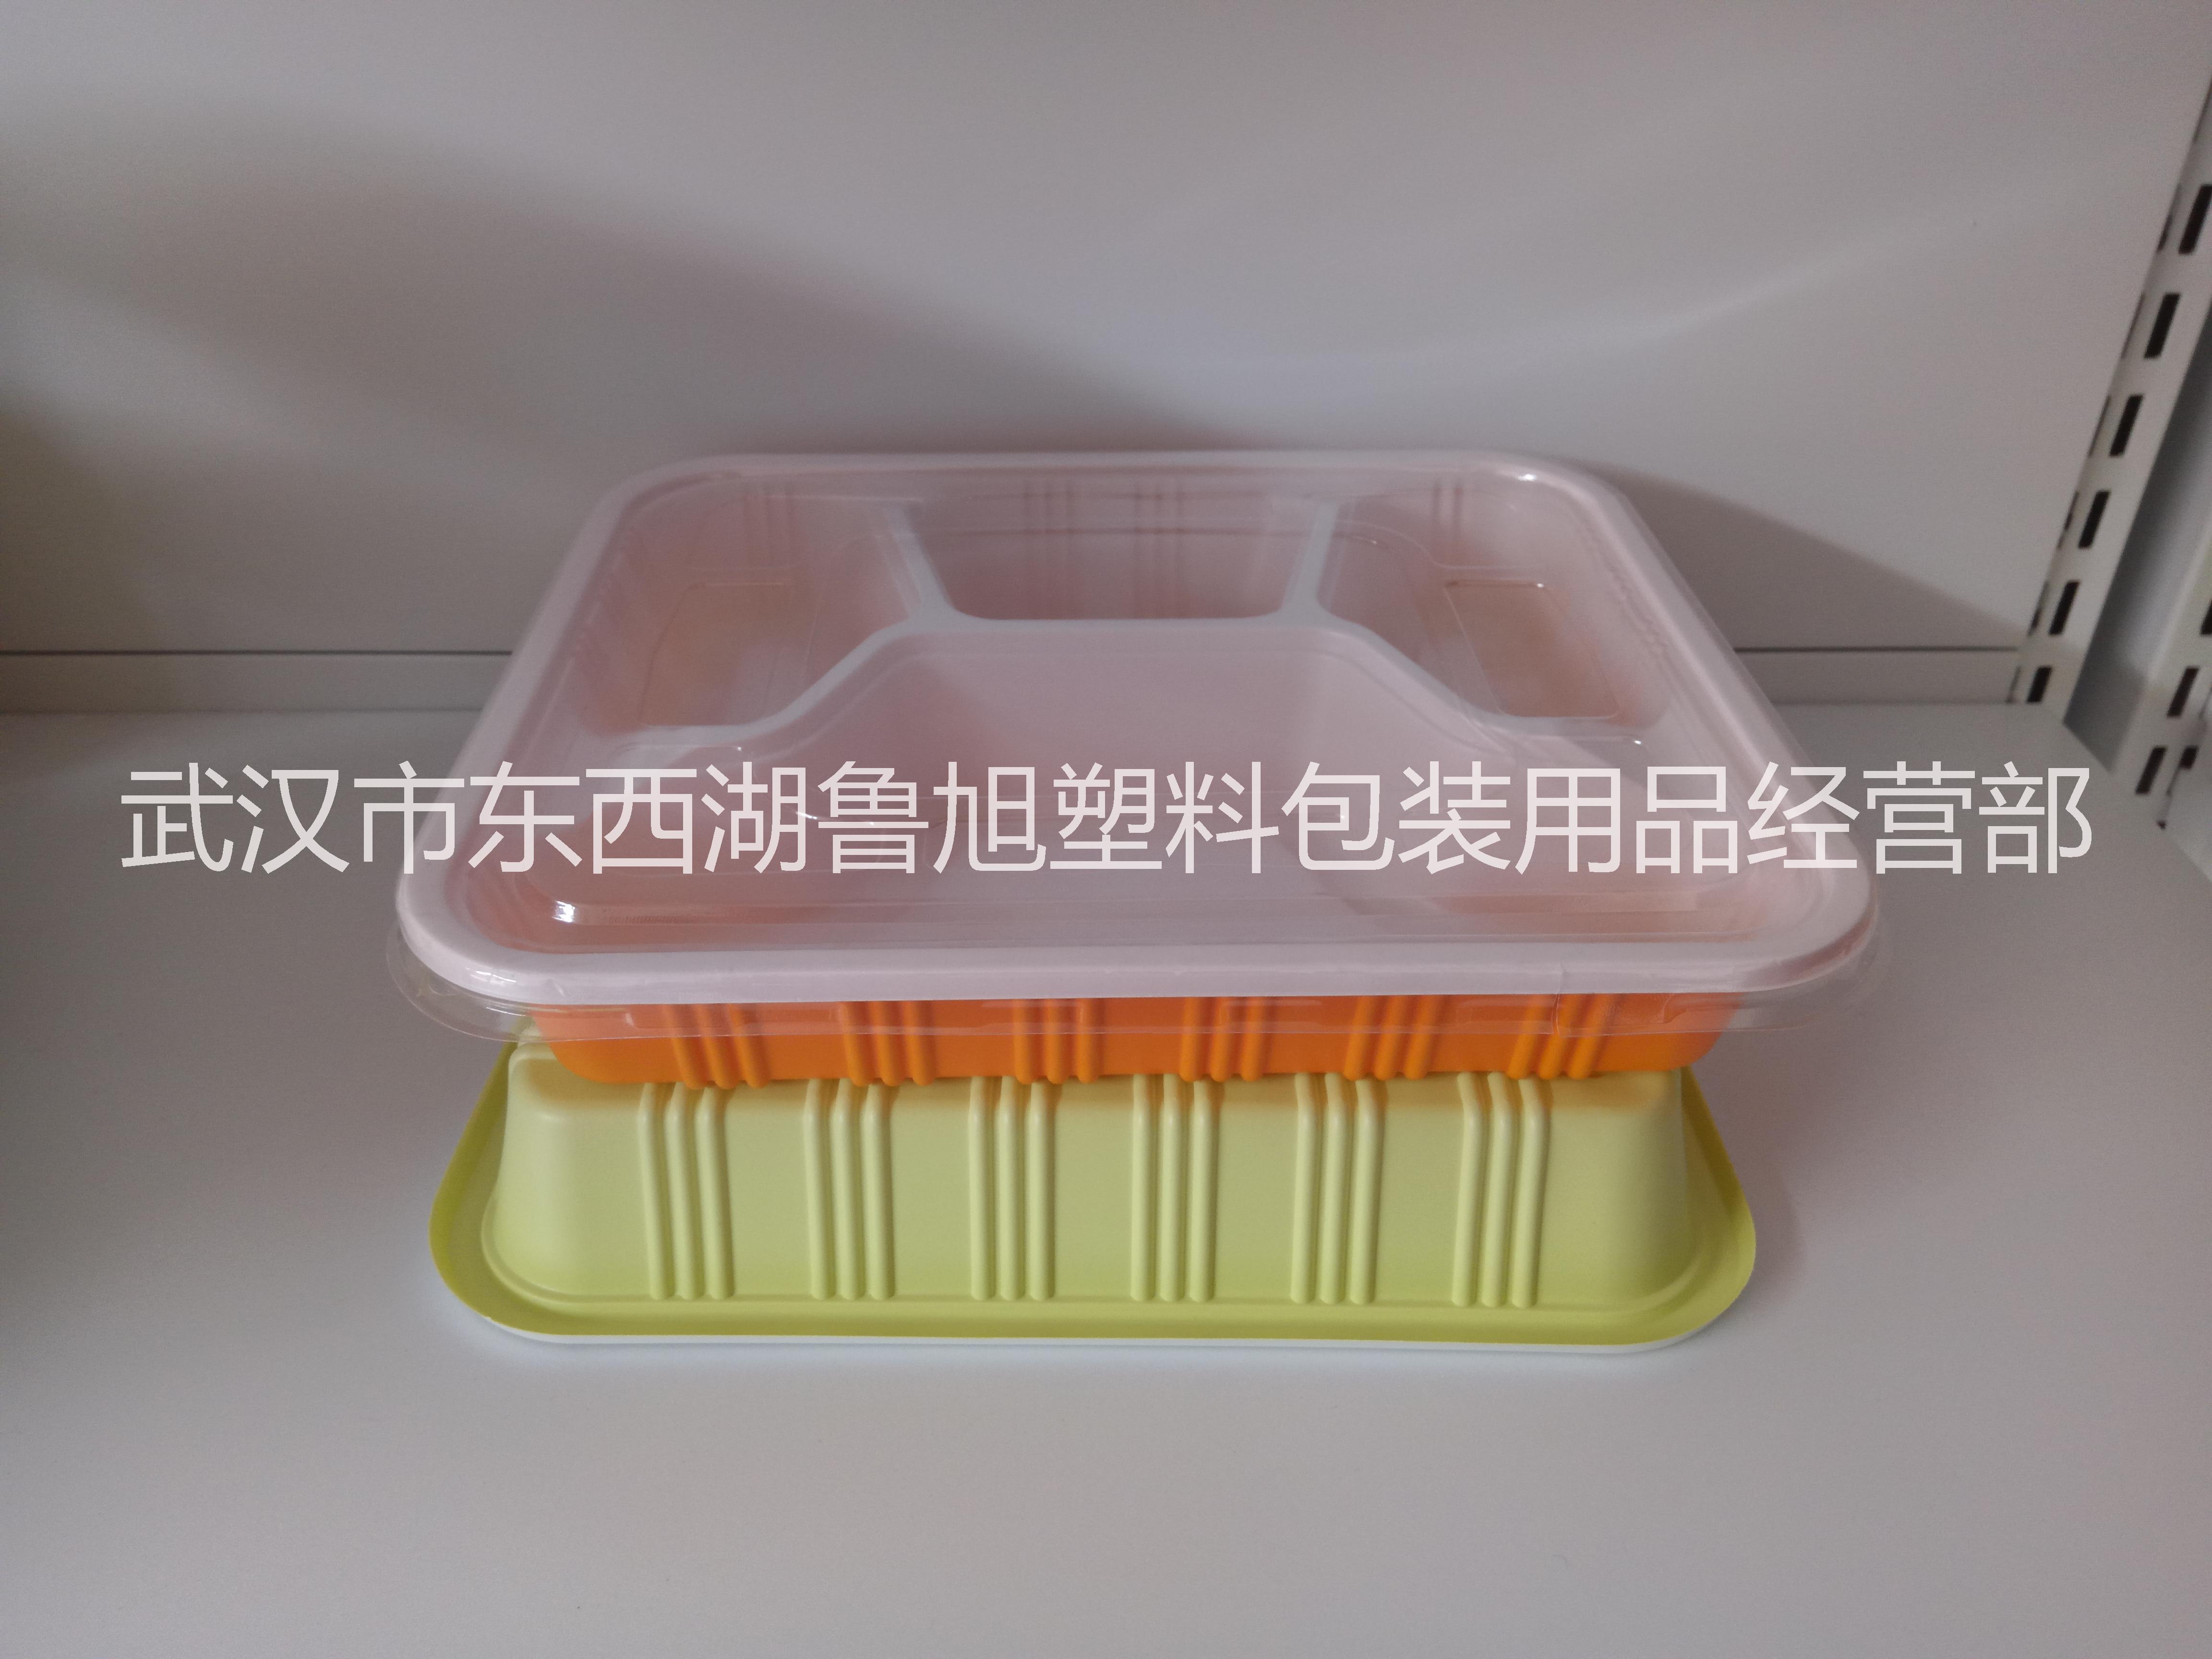 武汉市东西湖鲁旭塑料包装用品经营部